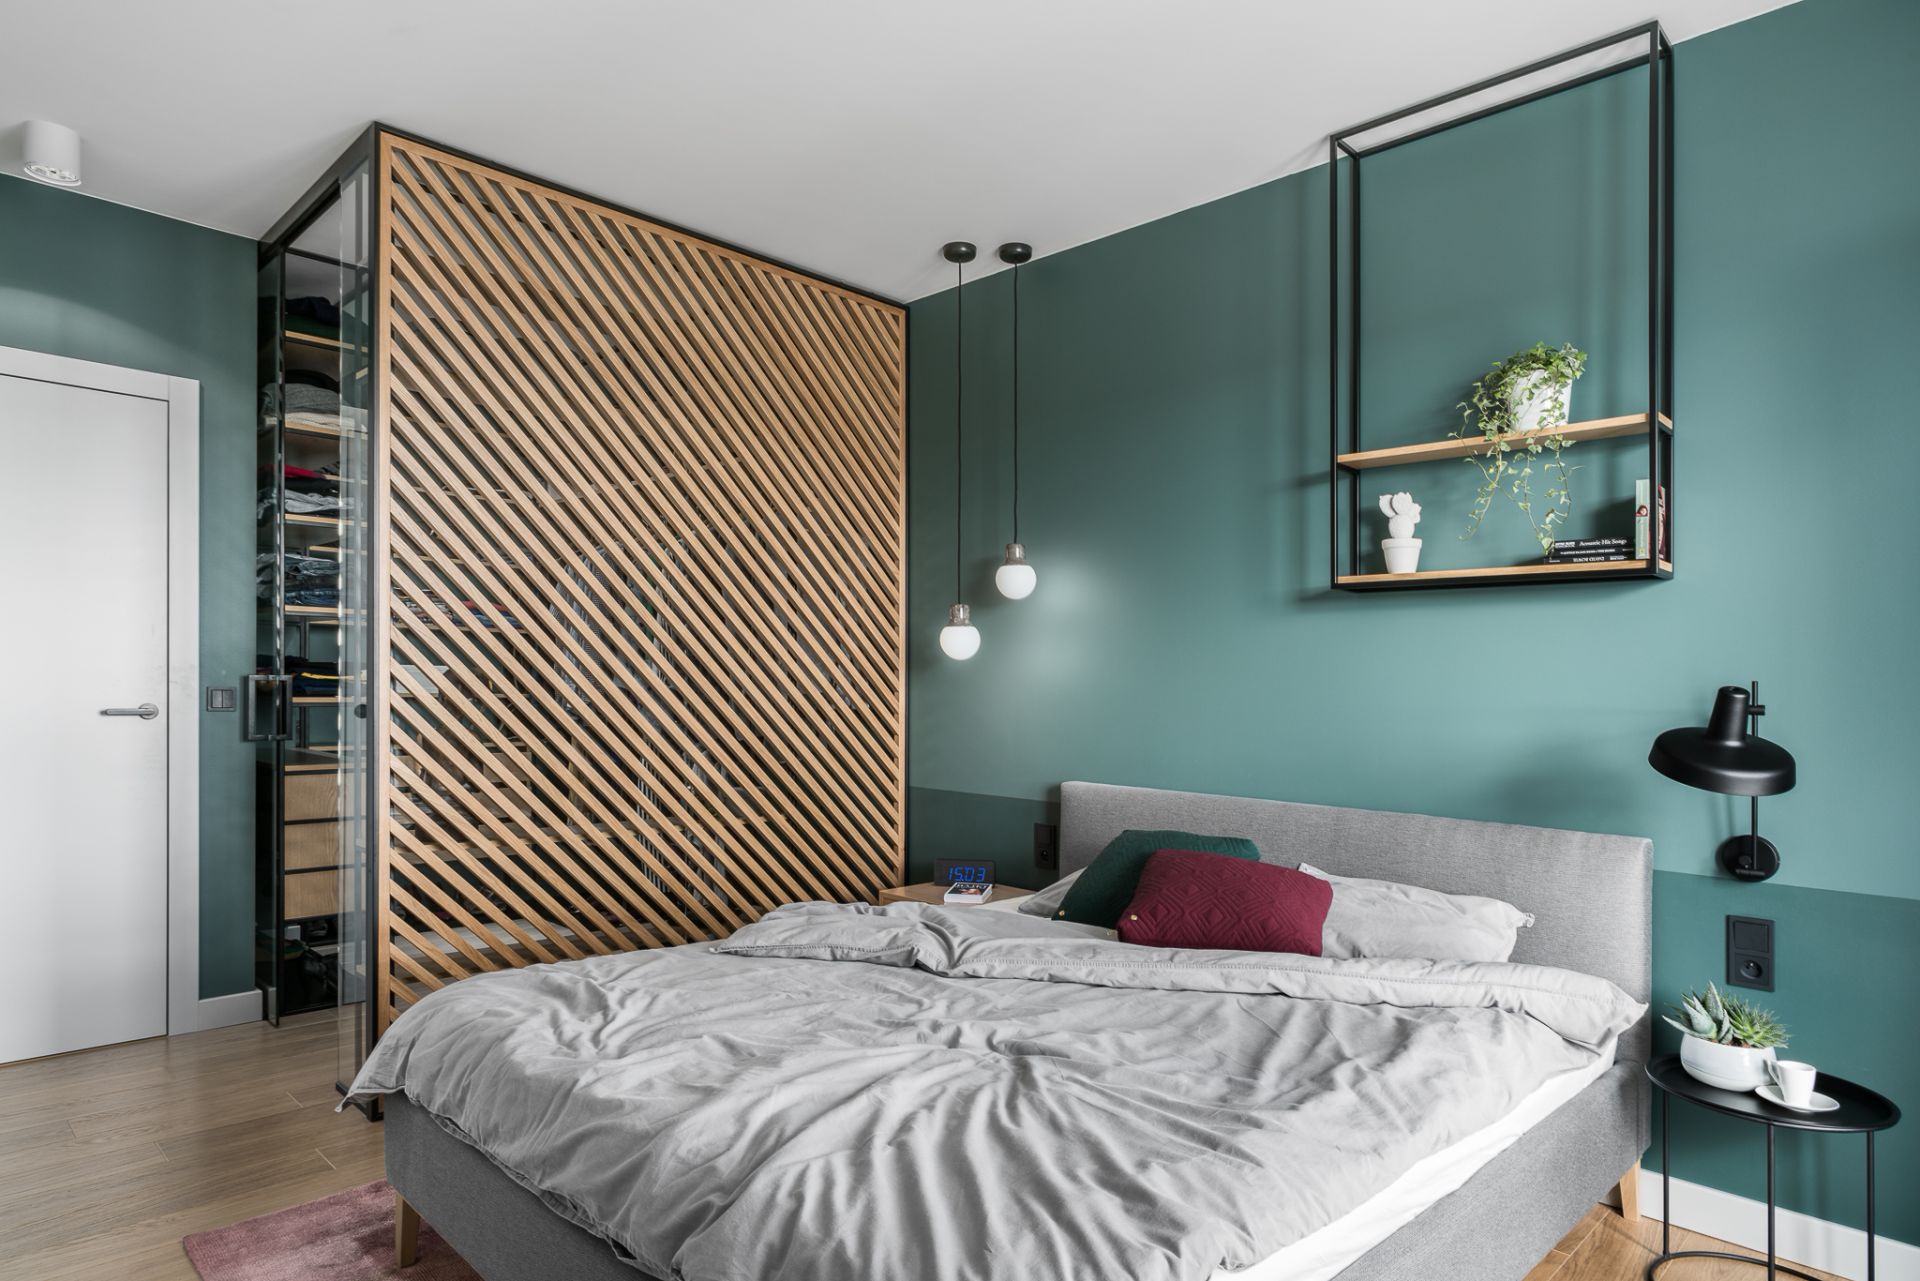 Pomysł na szafę w małej sypialni. Projekt Marta i Michał Raca, pracownia Raca Architekci. Zdjęcia Fotomohito